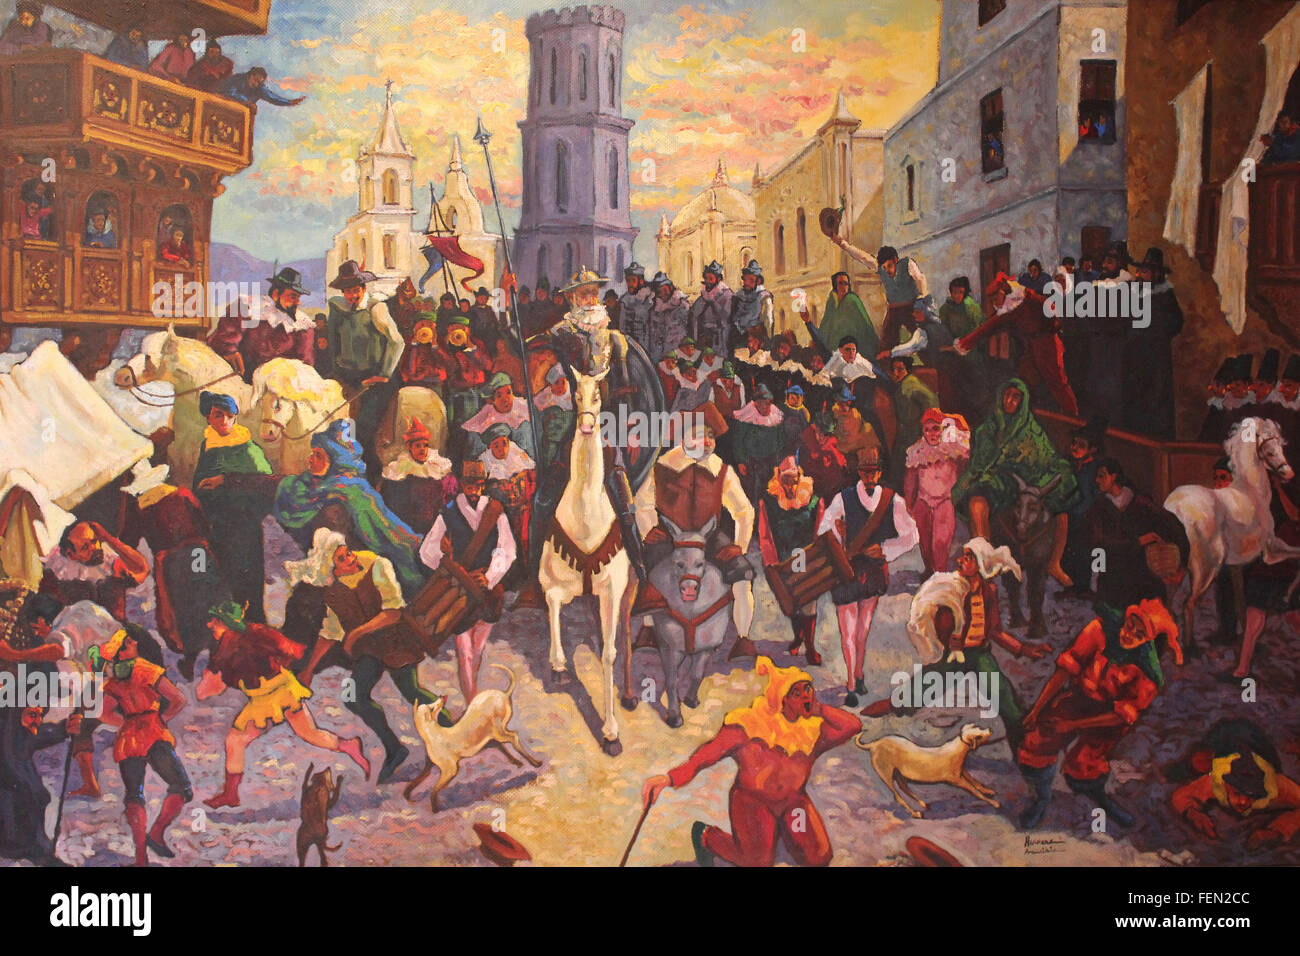 Malerei von Don Quixote von Arequipa Künstler Percy Herrera "En un Lugar De La Mancha" - "In dem Dorf La Mancha" Stockfoto